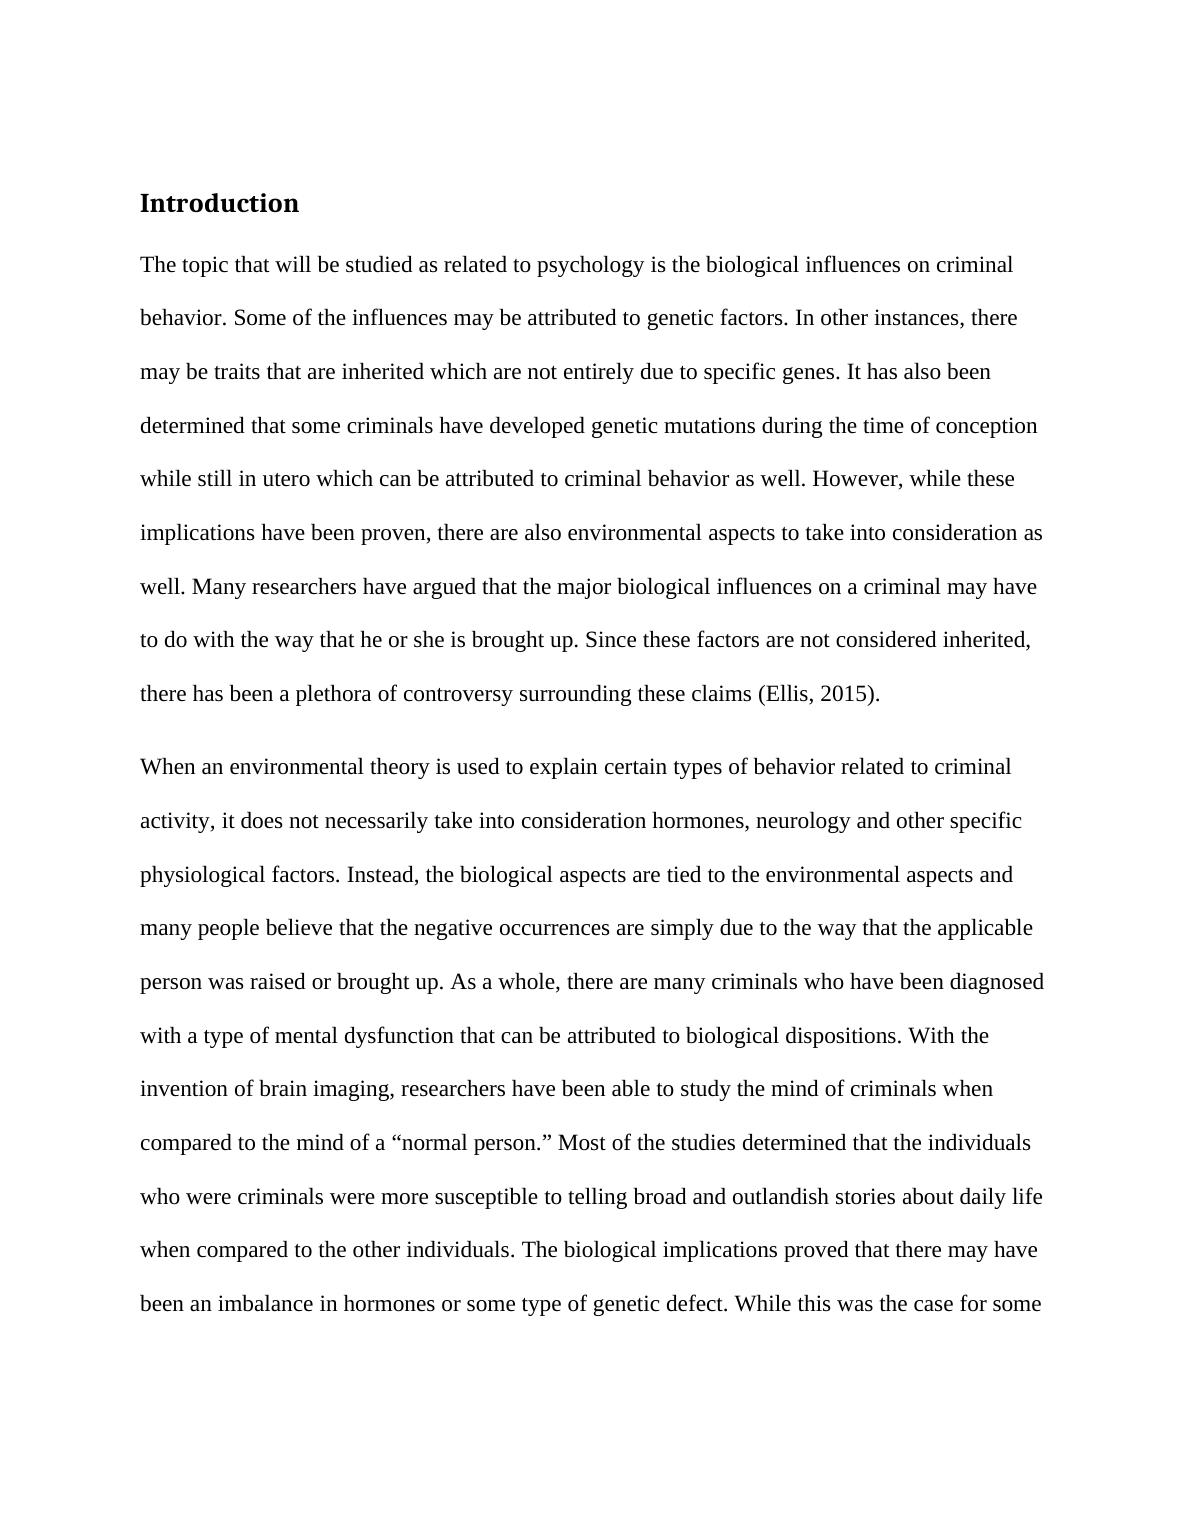 Paper on Biological Influence on Criminal Behavior_4